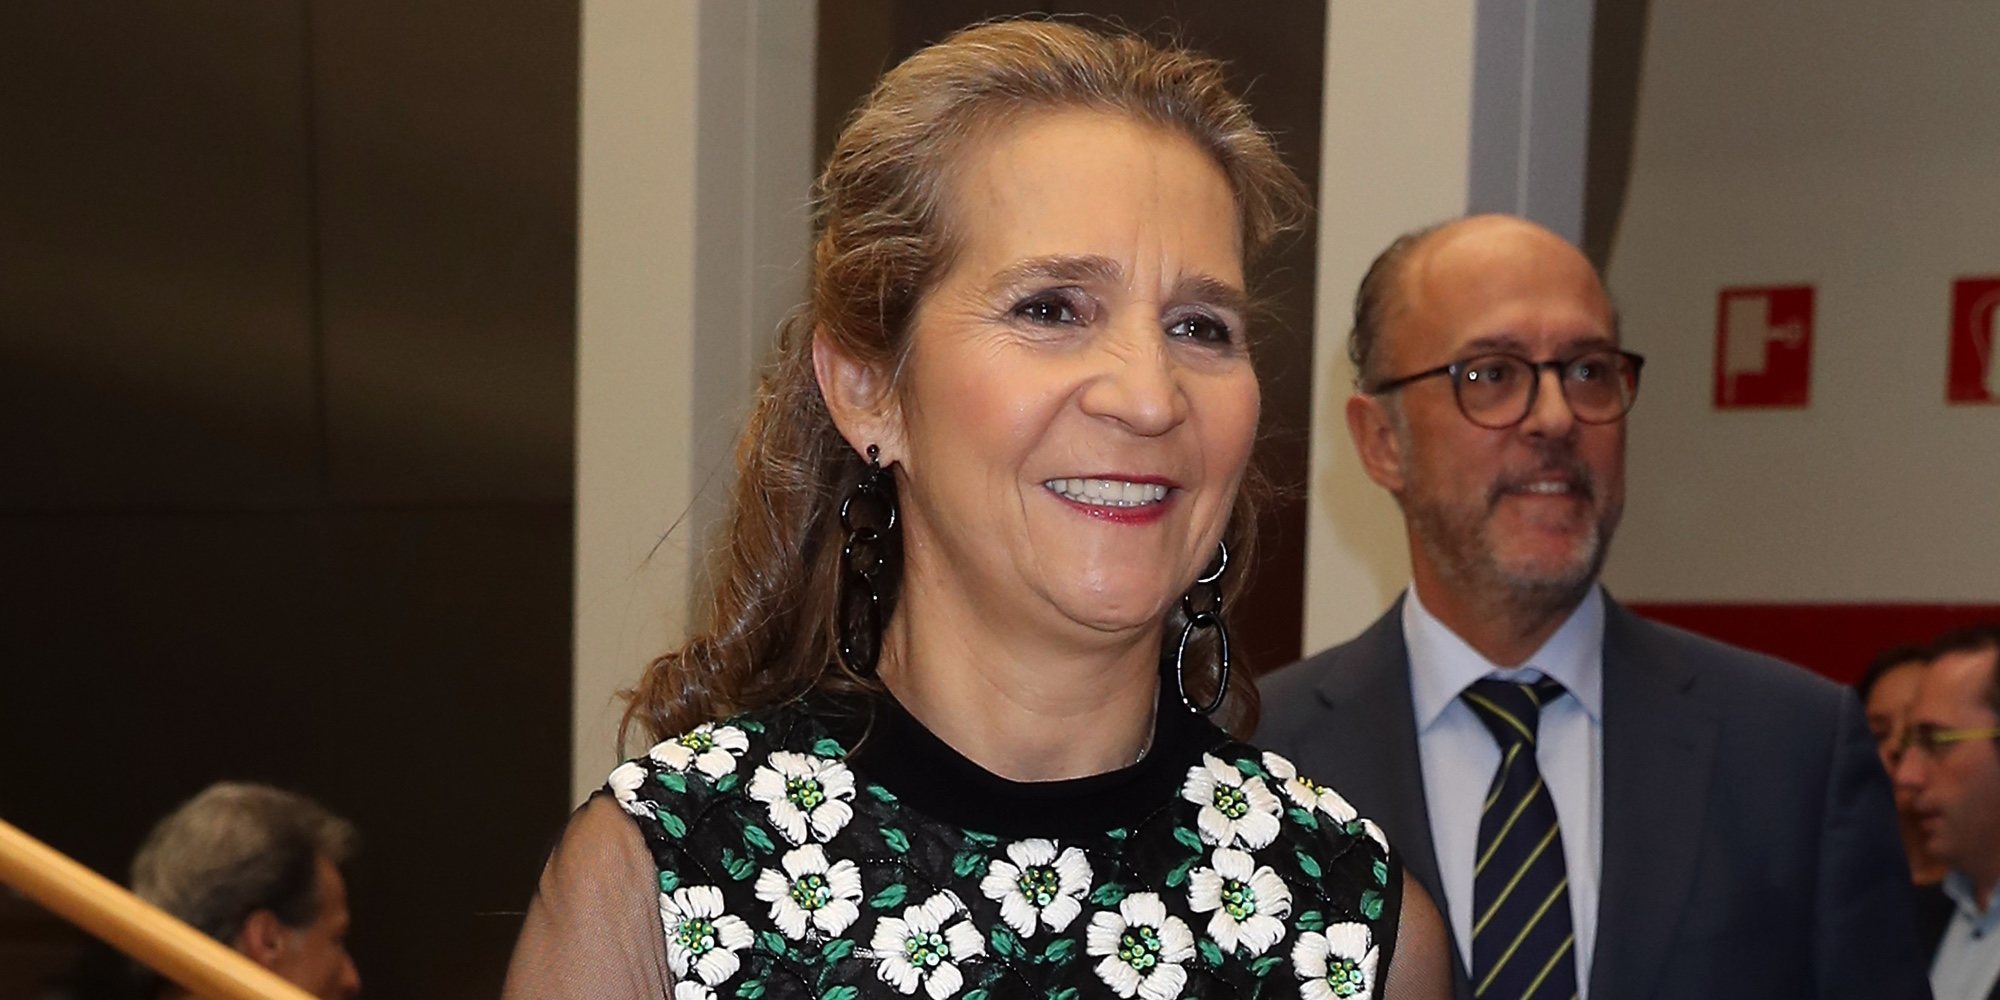 La Infanta Elena recupera la sonrisa gracias a Special Olympics España tras su tristeza por ser ninguneada